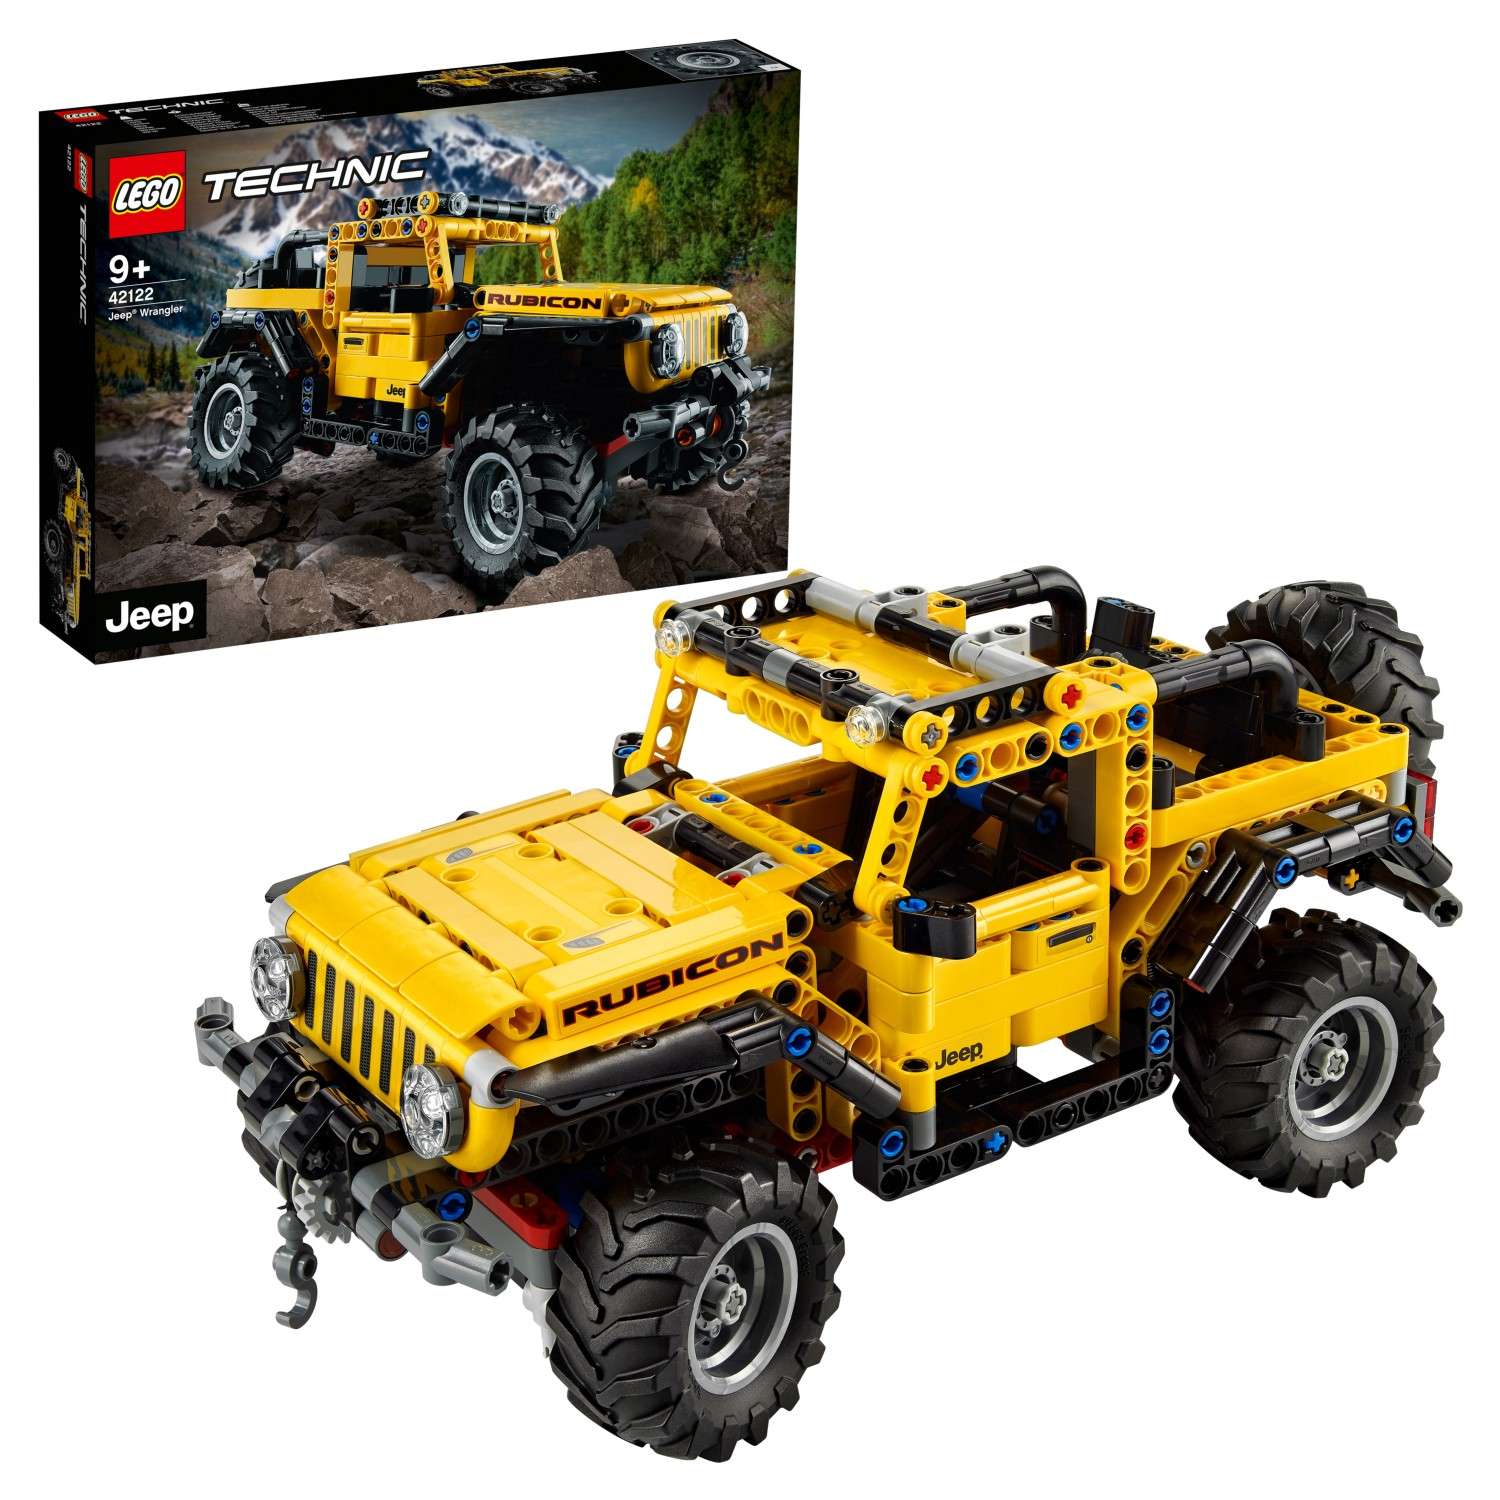 Конструктор LEGO Technic Jeep Wrangler 42122 - фото 1